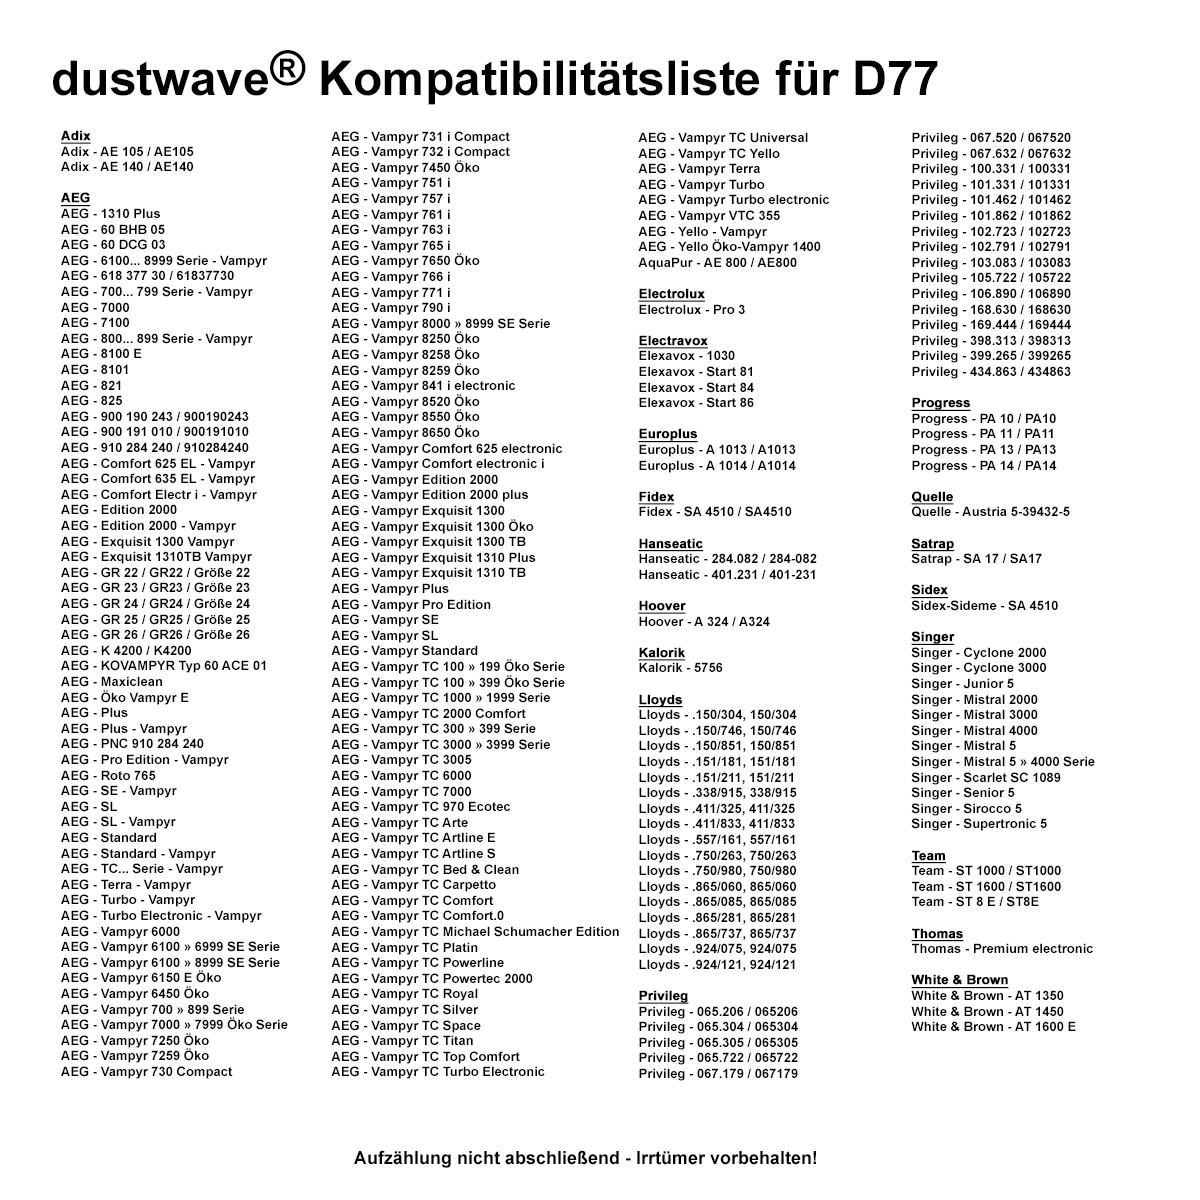 Dustwave® 10 Staubsaugerbeutel für AEG Vampyr 7305 Electronic - hocheffizient, mehrlagiges Mikrovlies mit Hygieneverschluss - Made in Germany